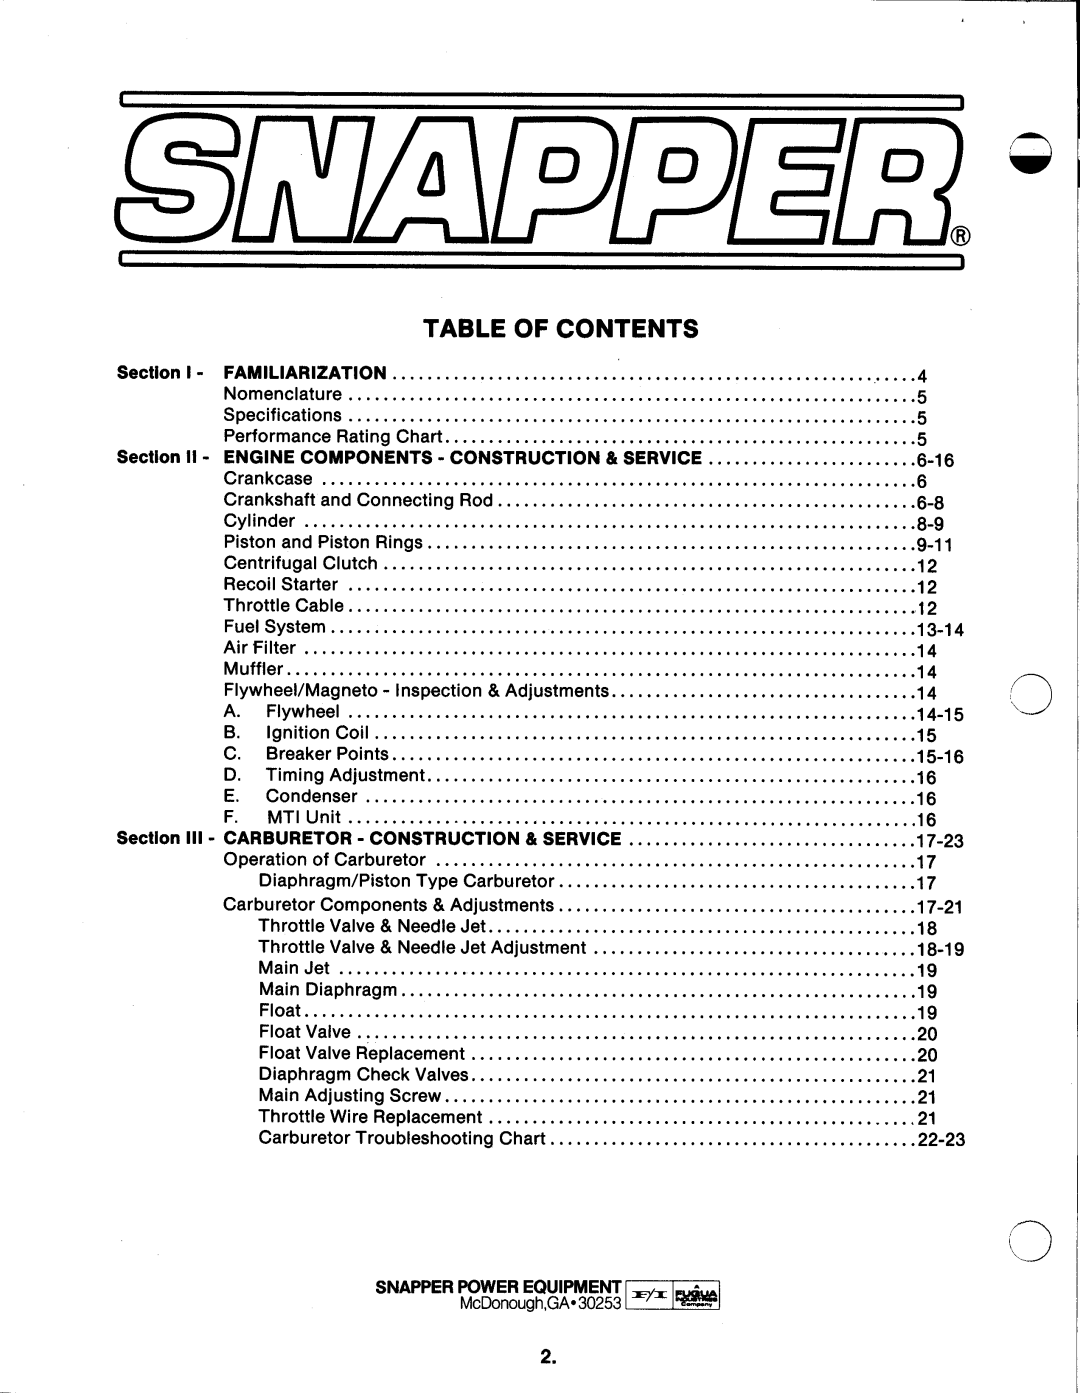 Snapper 410 manual 